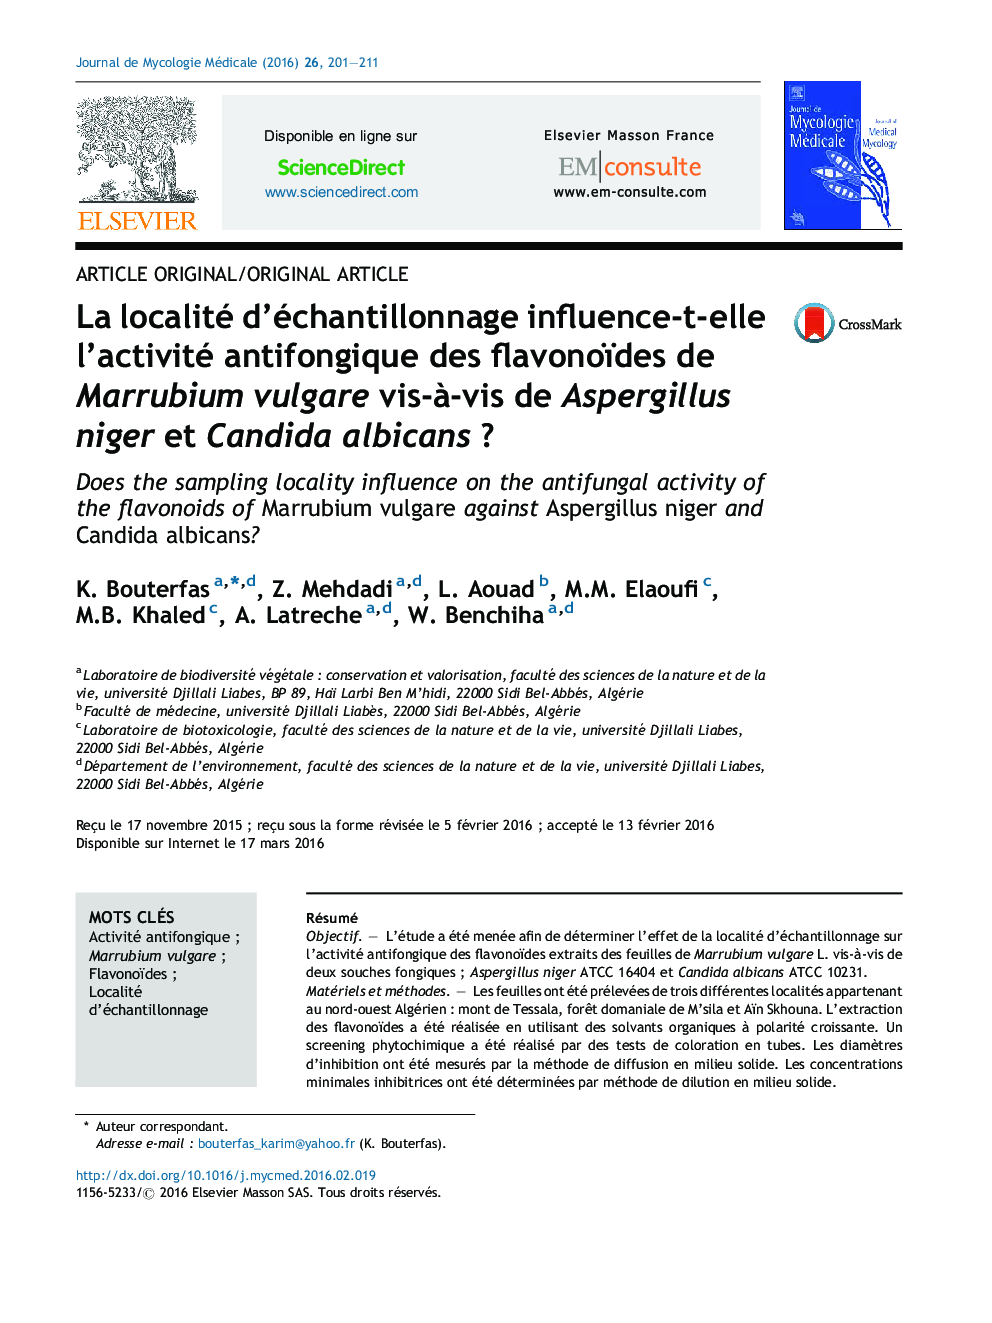 La localité d’échantillonnage influence-t-elle l’activité antifongique des flavonoïdes de Marrubium vulgare vis-à-vis de Aspergillus niger et Candida albicans ?